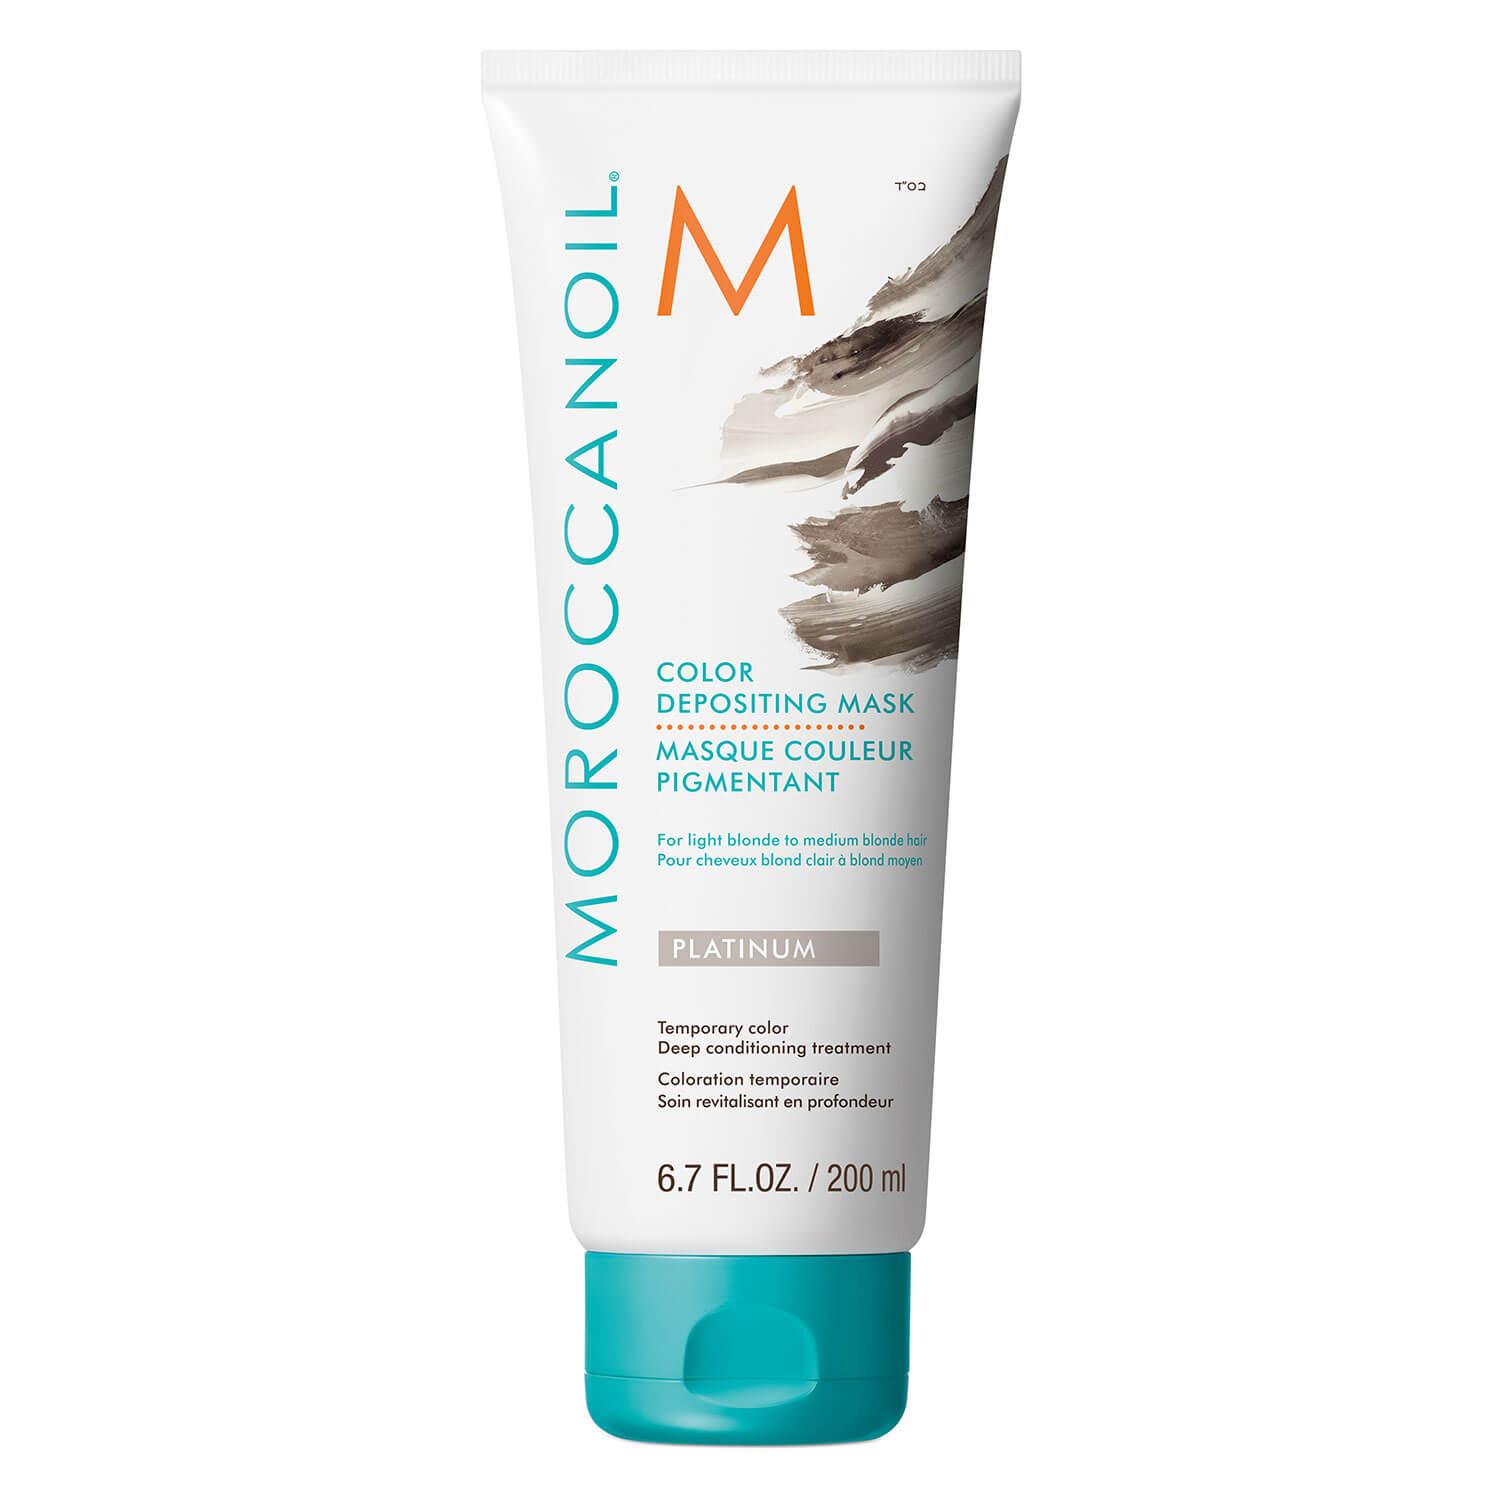 Moroccanoil - Masque Couleur Pigmentant Platinum